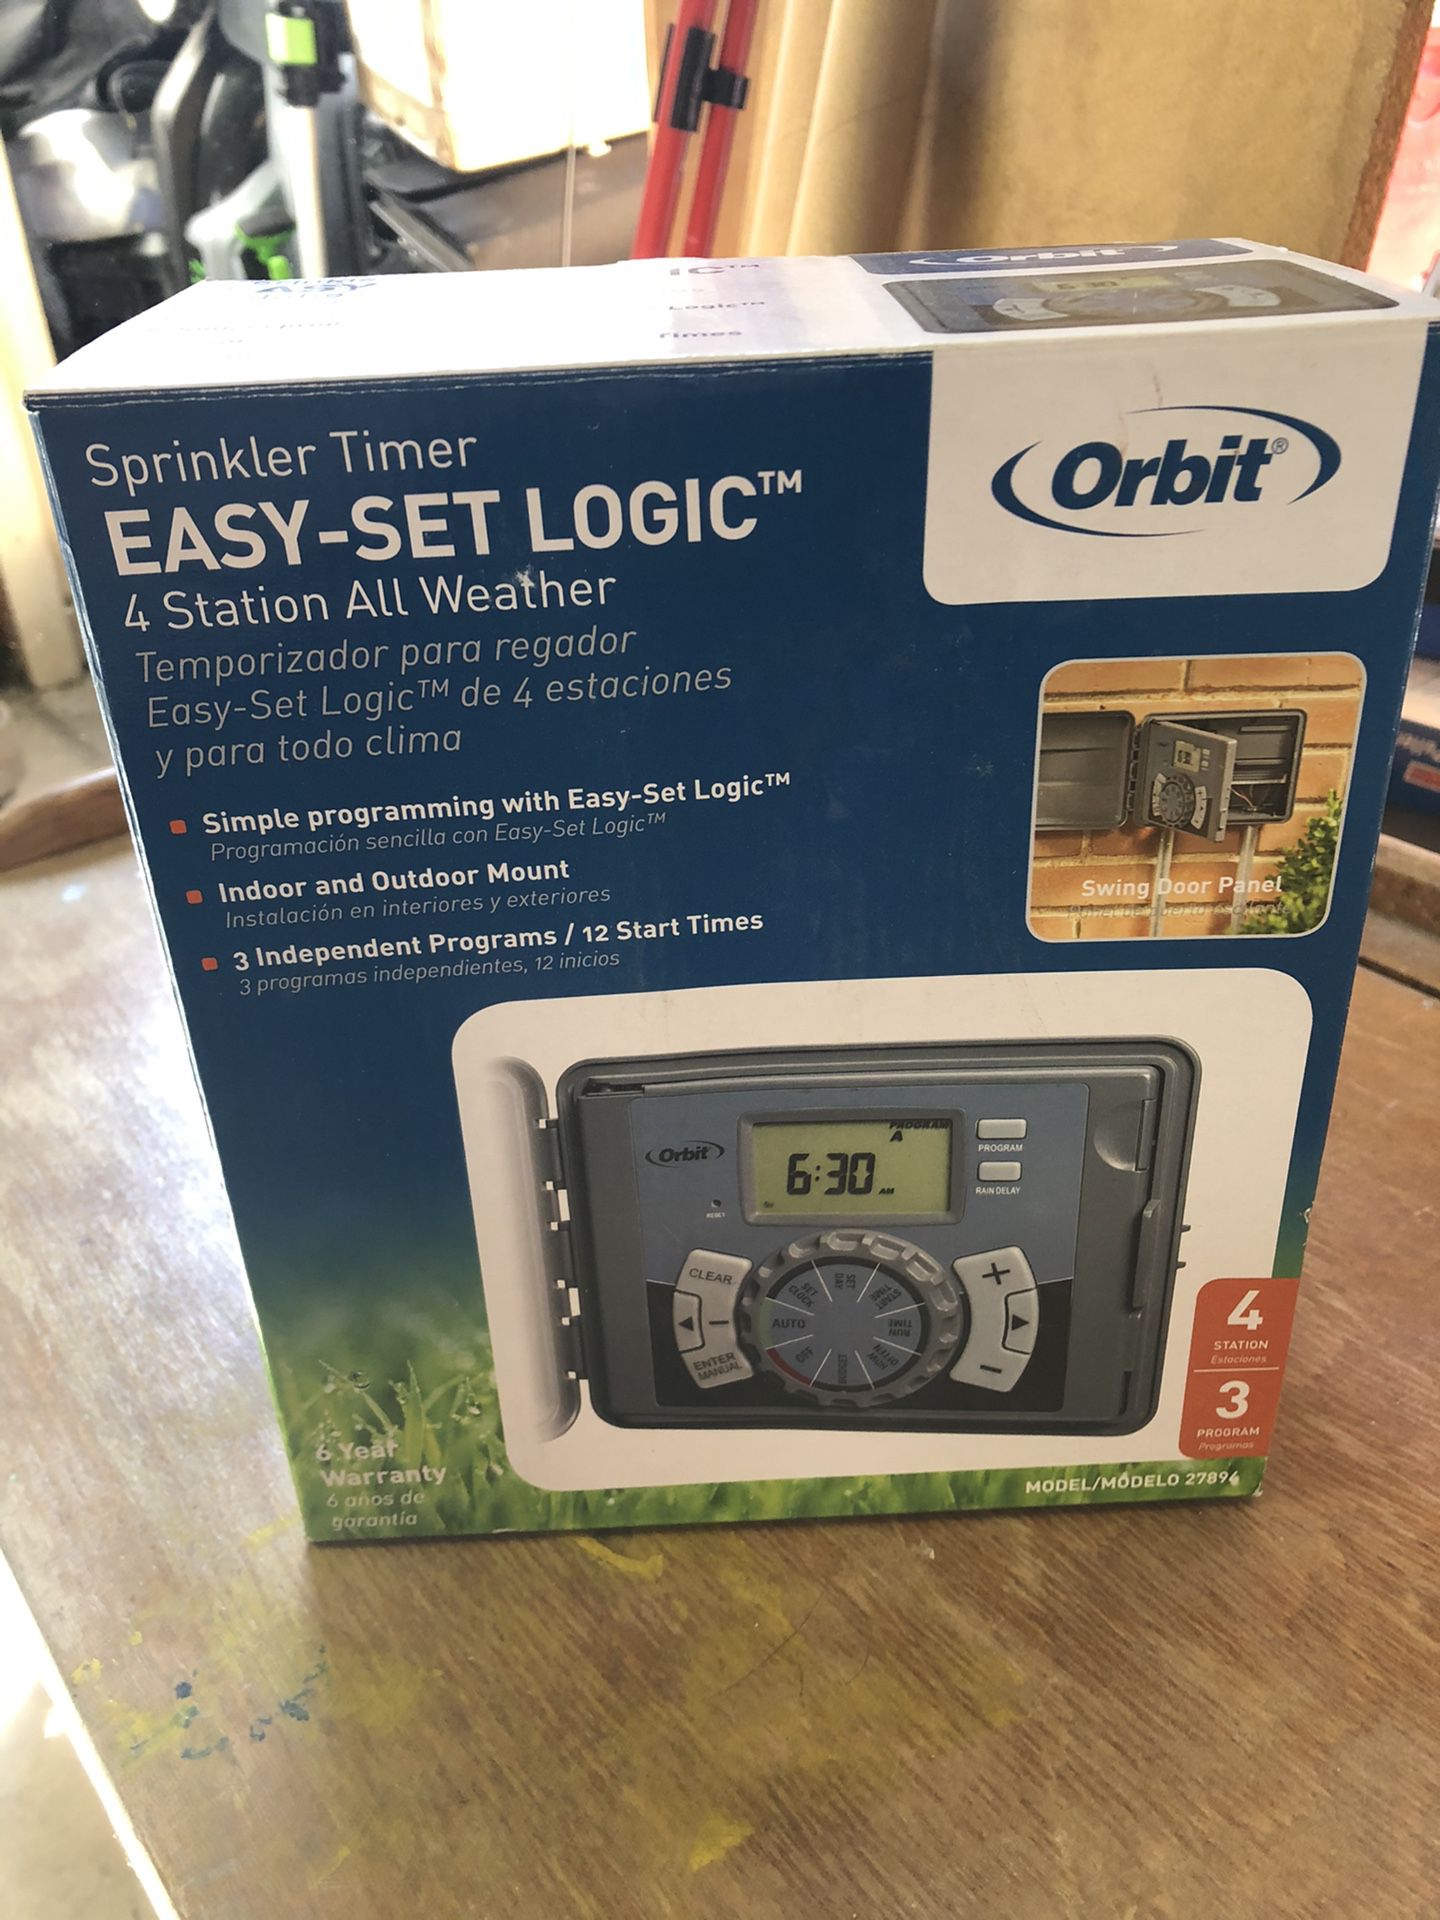 ORBIT easy-set logic sprinkler timer